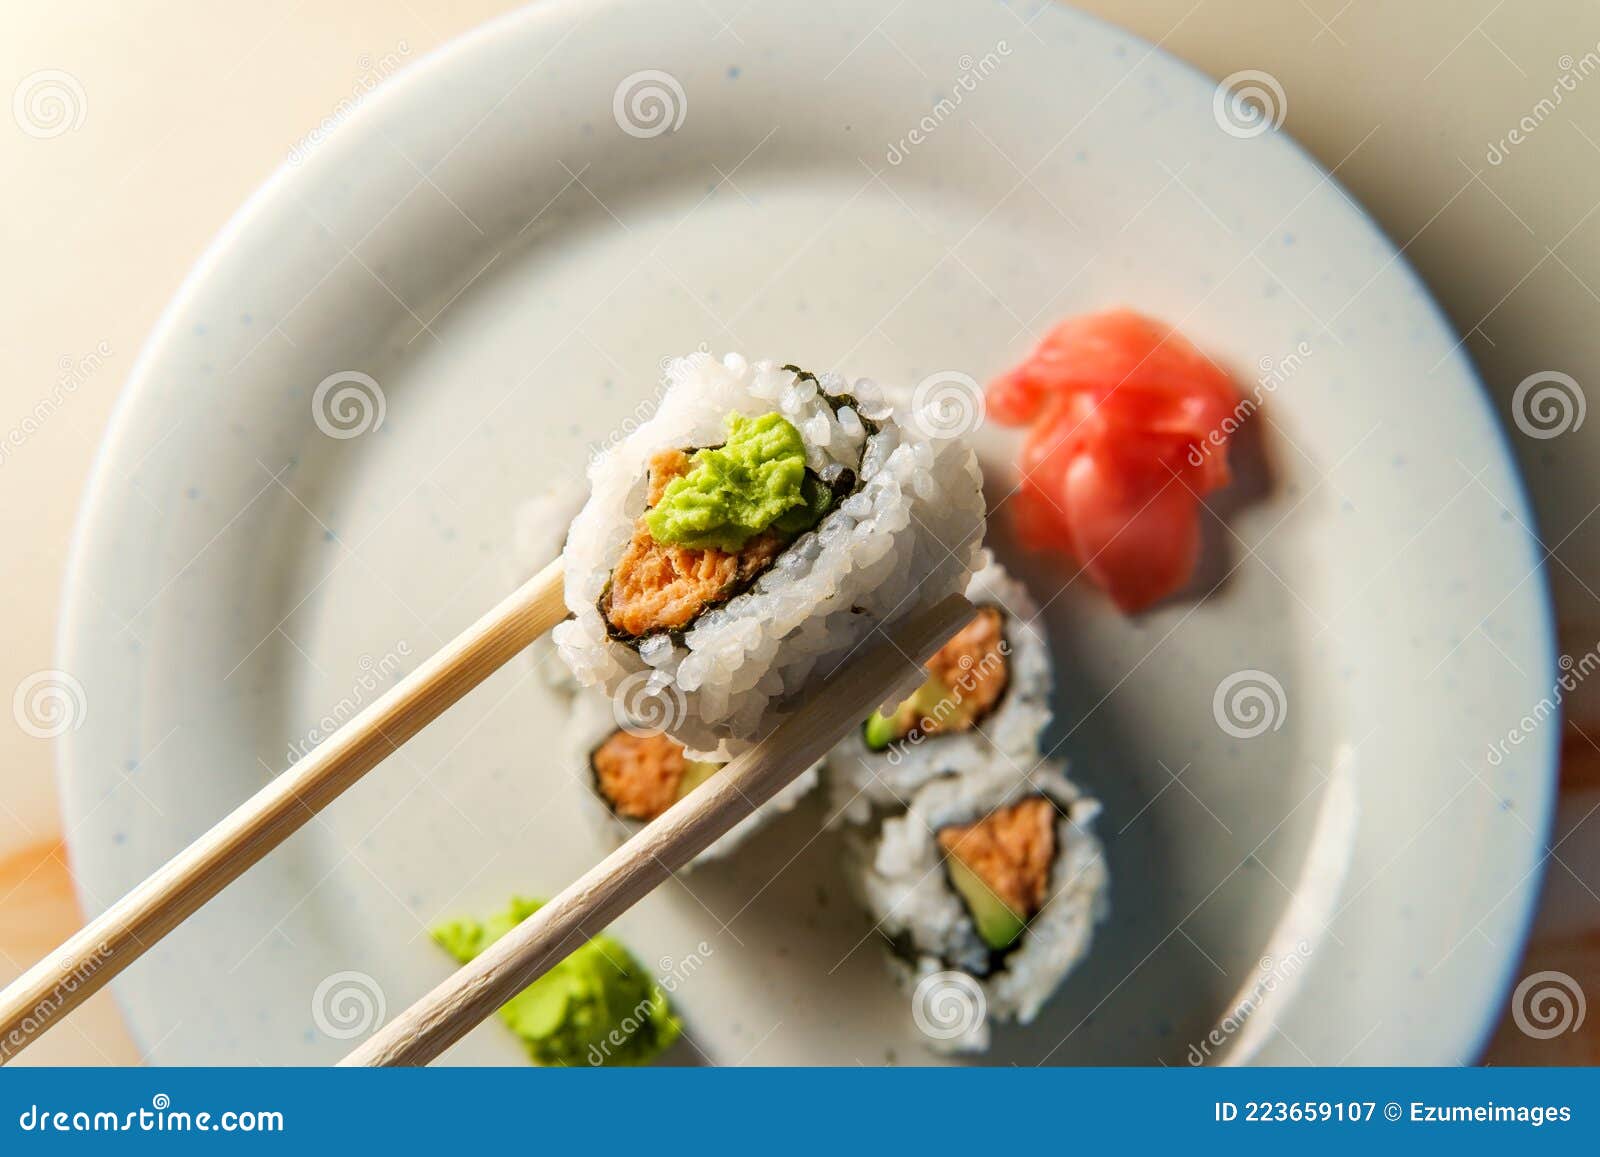 金枪鱼面包寿司卷怎么做_金枪鱼面包寿司卷的做法_大润小厨_豆果美食